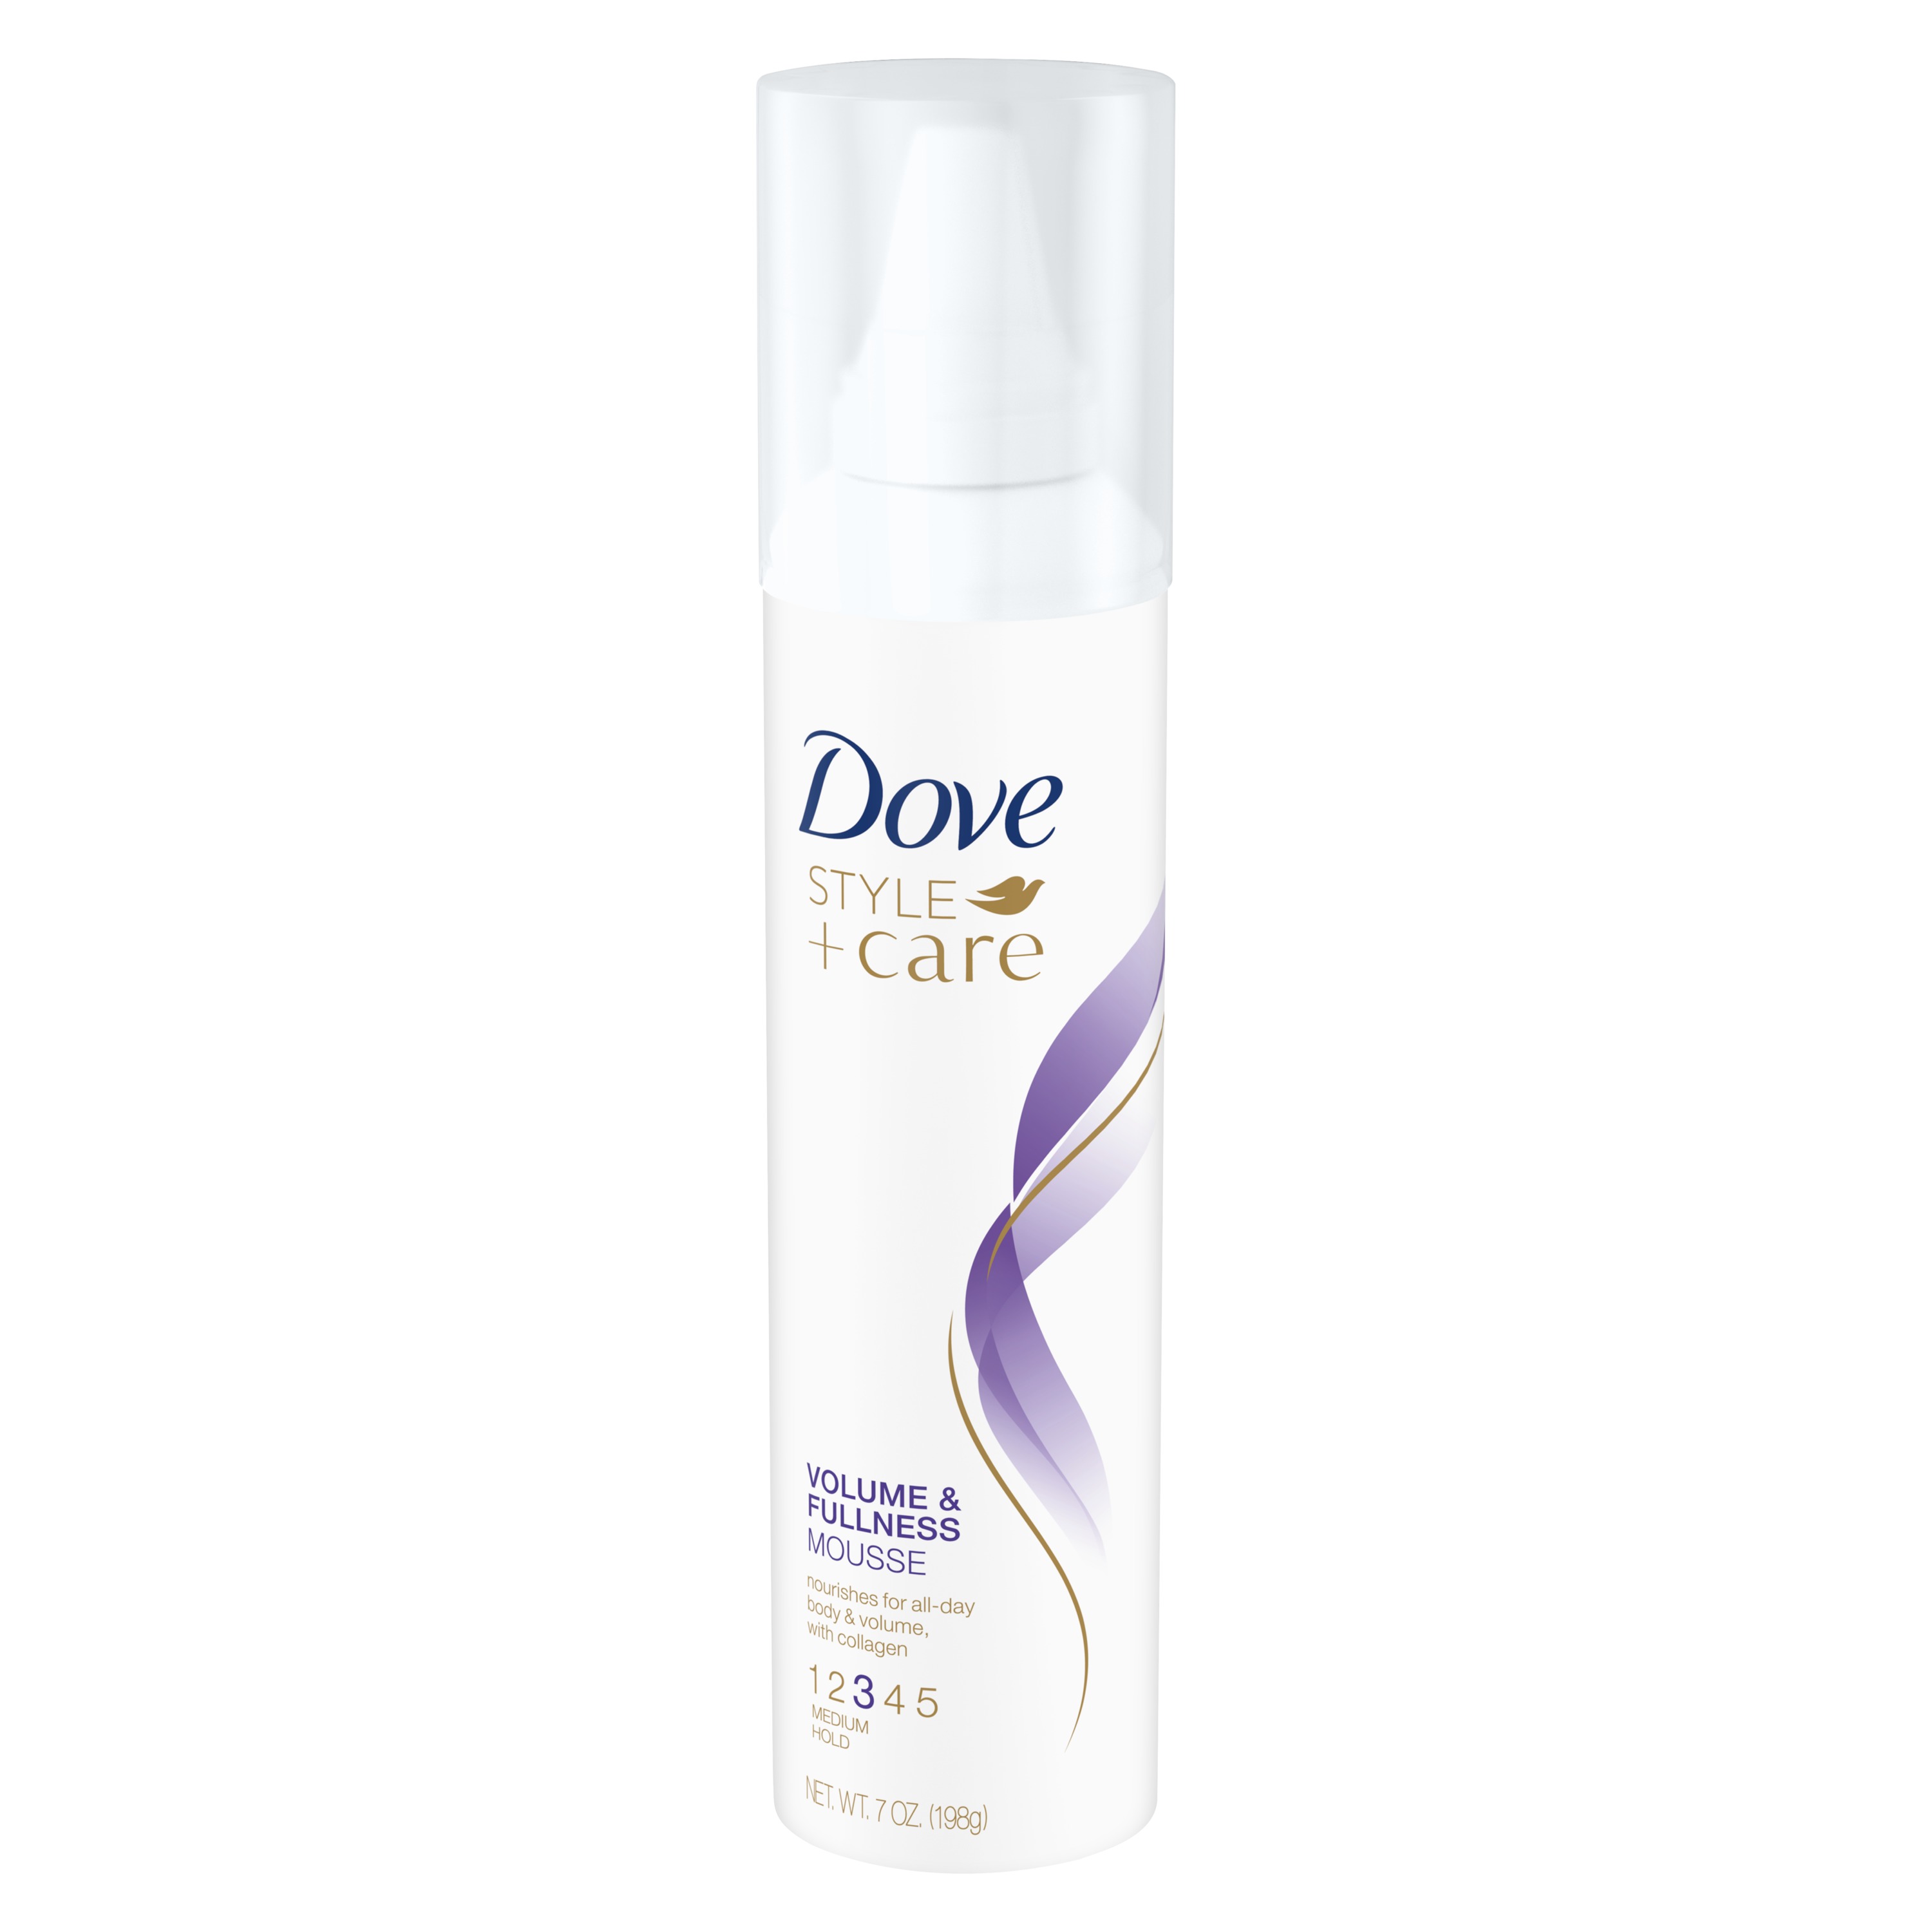 Dove Style + Care Volumizing Nourishing Spray Hair Styling Mousse, 7 oz - image 4 of 6